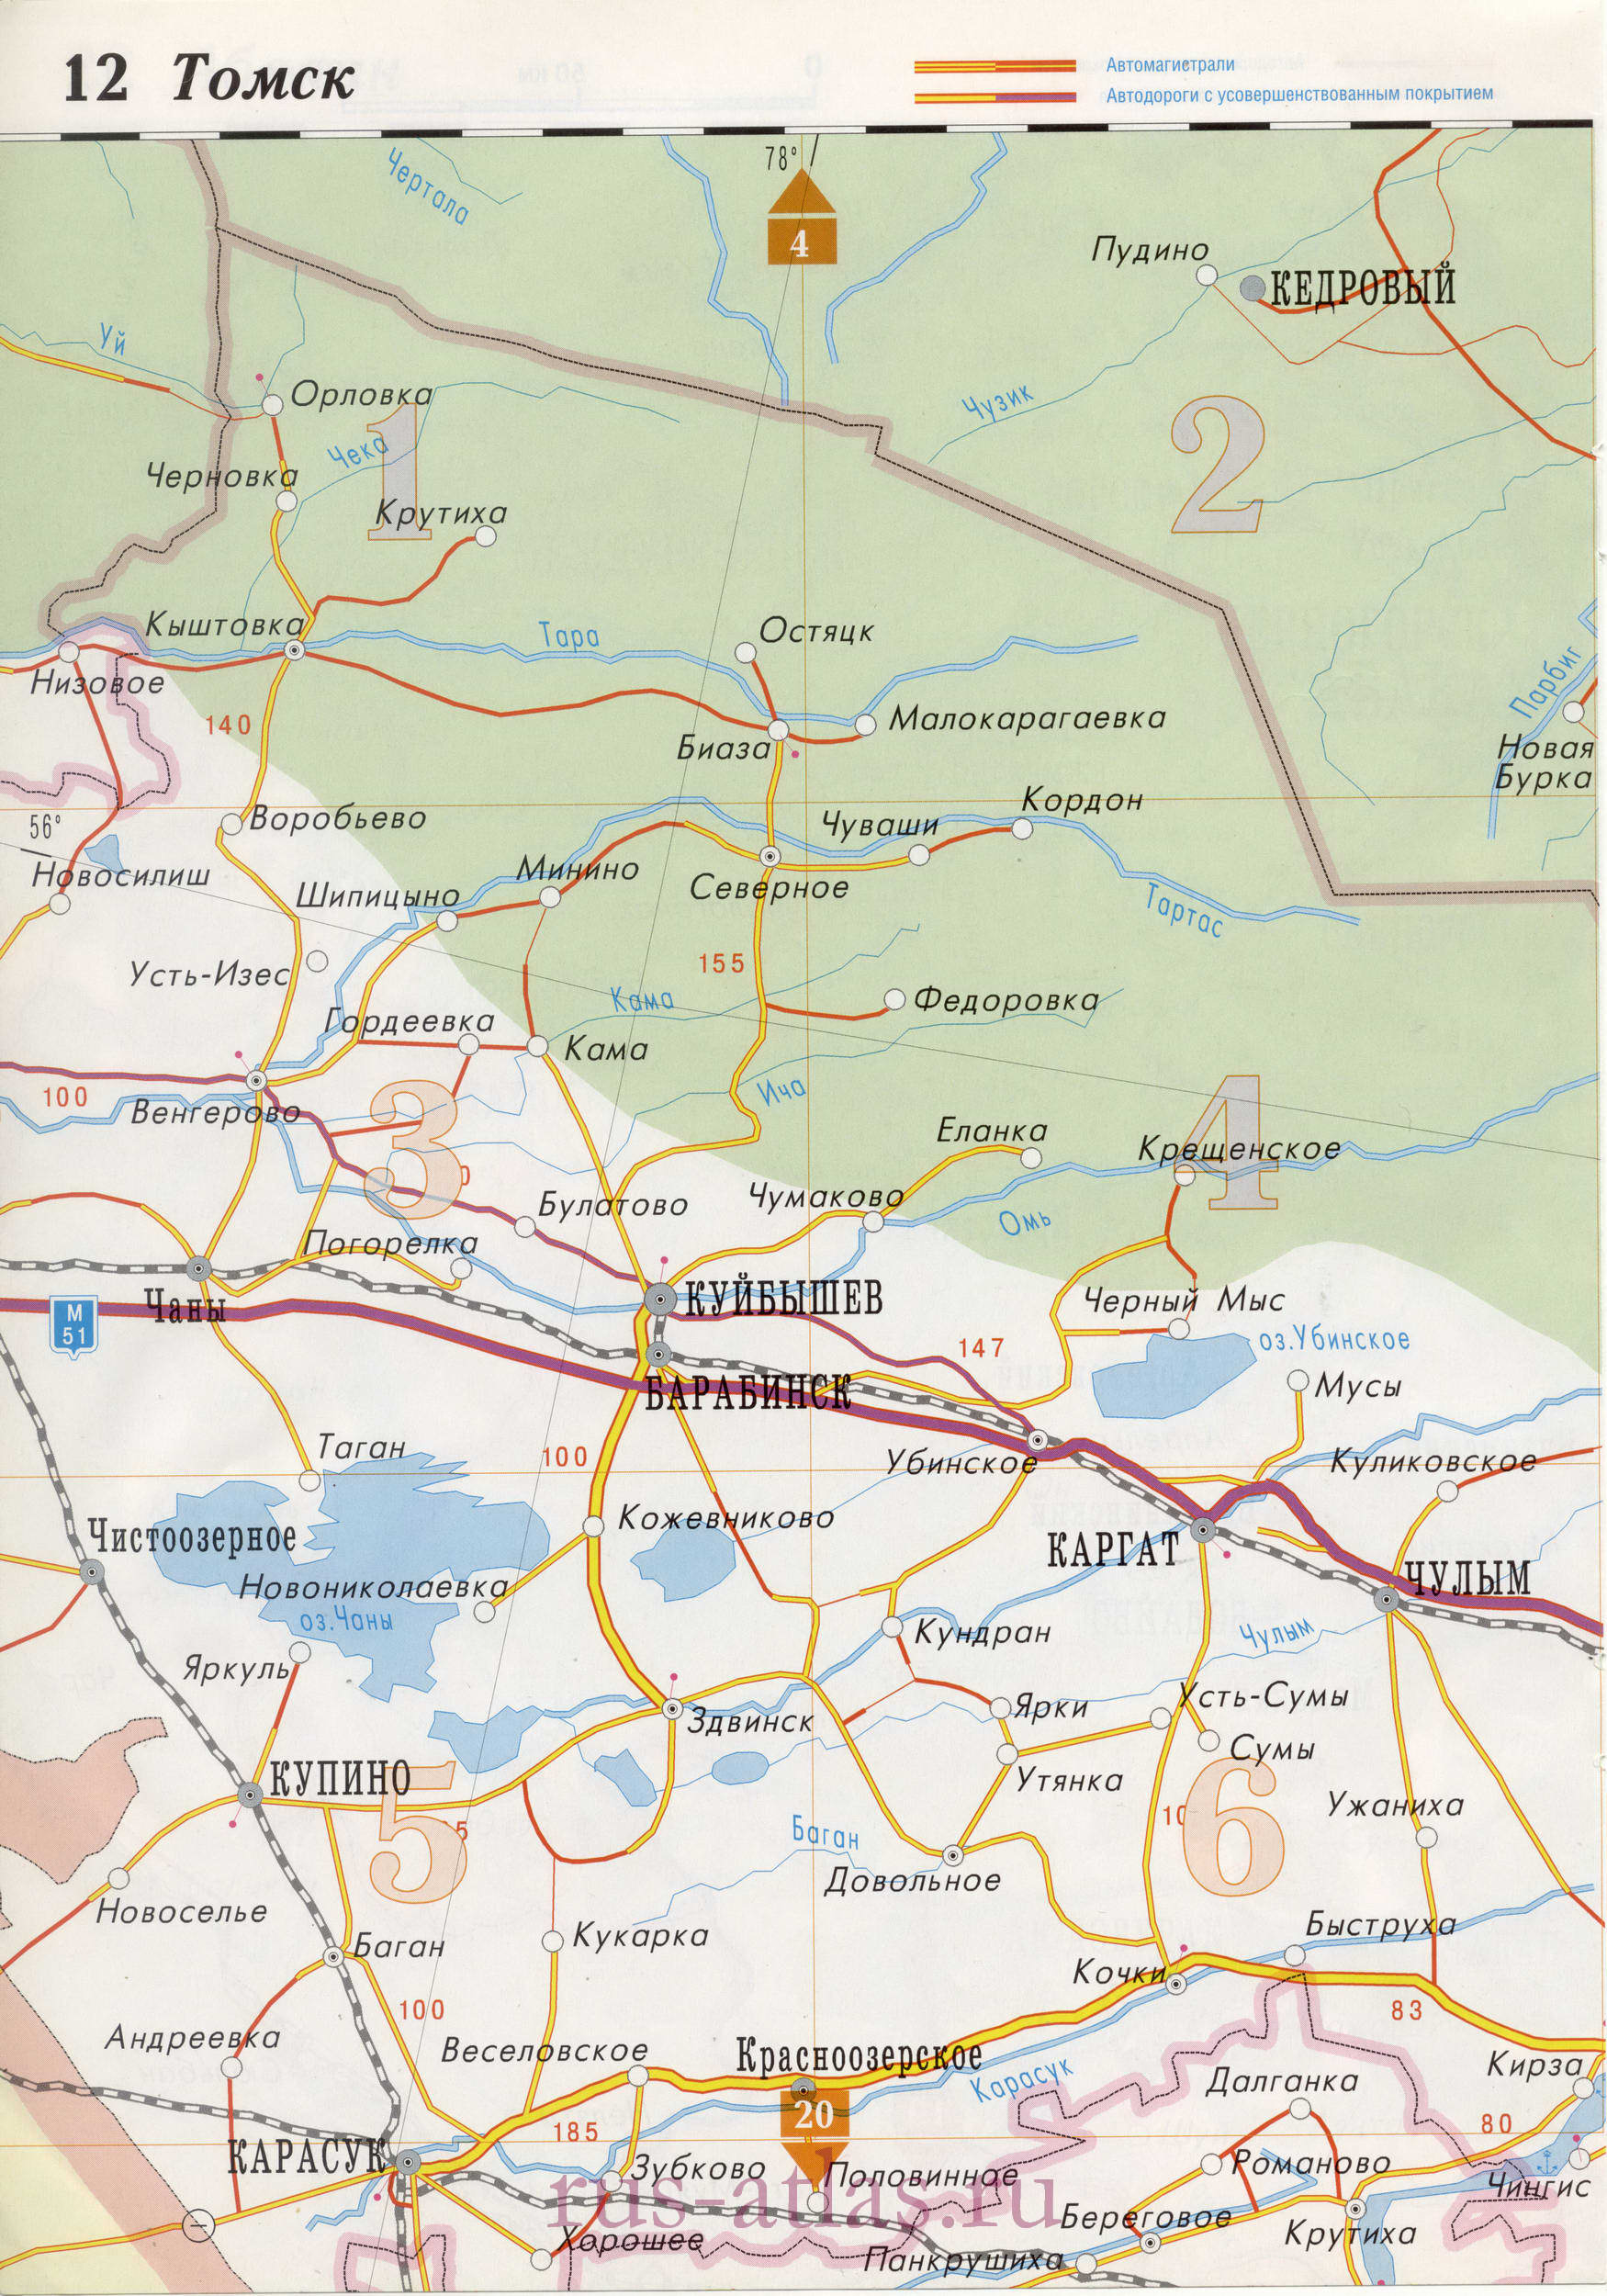 Дорожная карта Томской области и соседних регионов , A1 - 